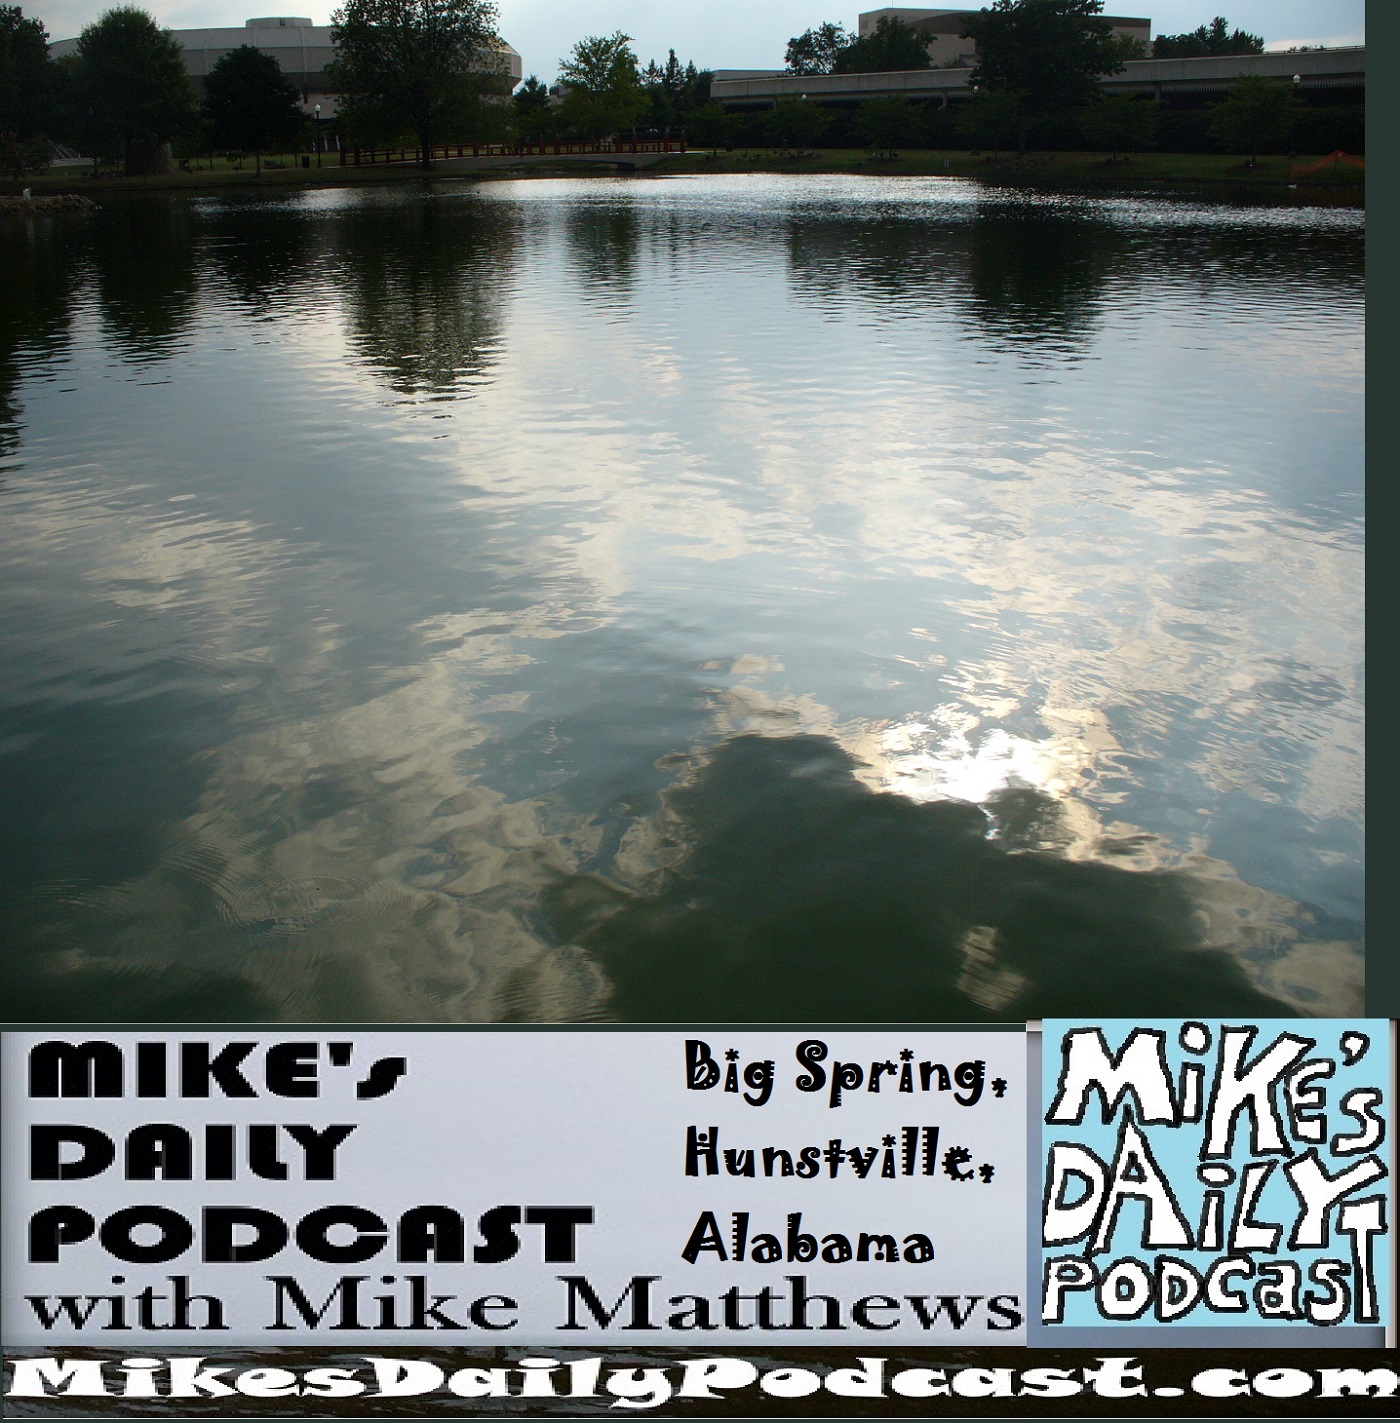 mikes-daily-podcast-1212-von-braun-center-huntsville-al